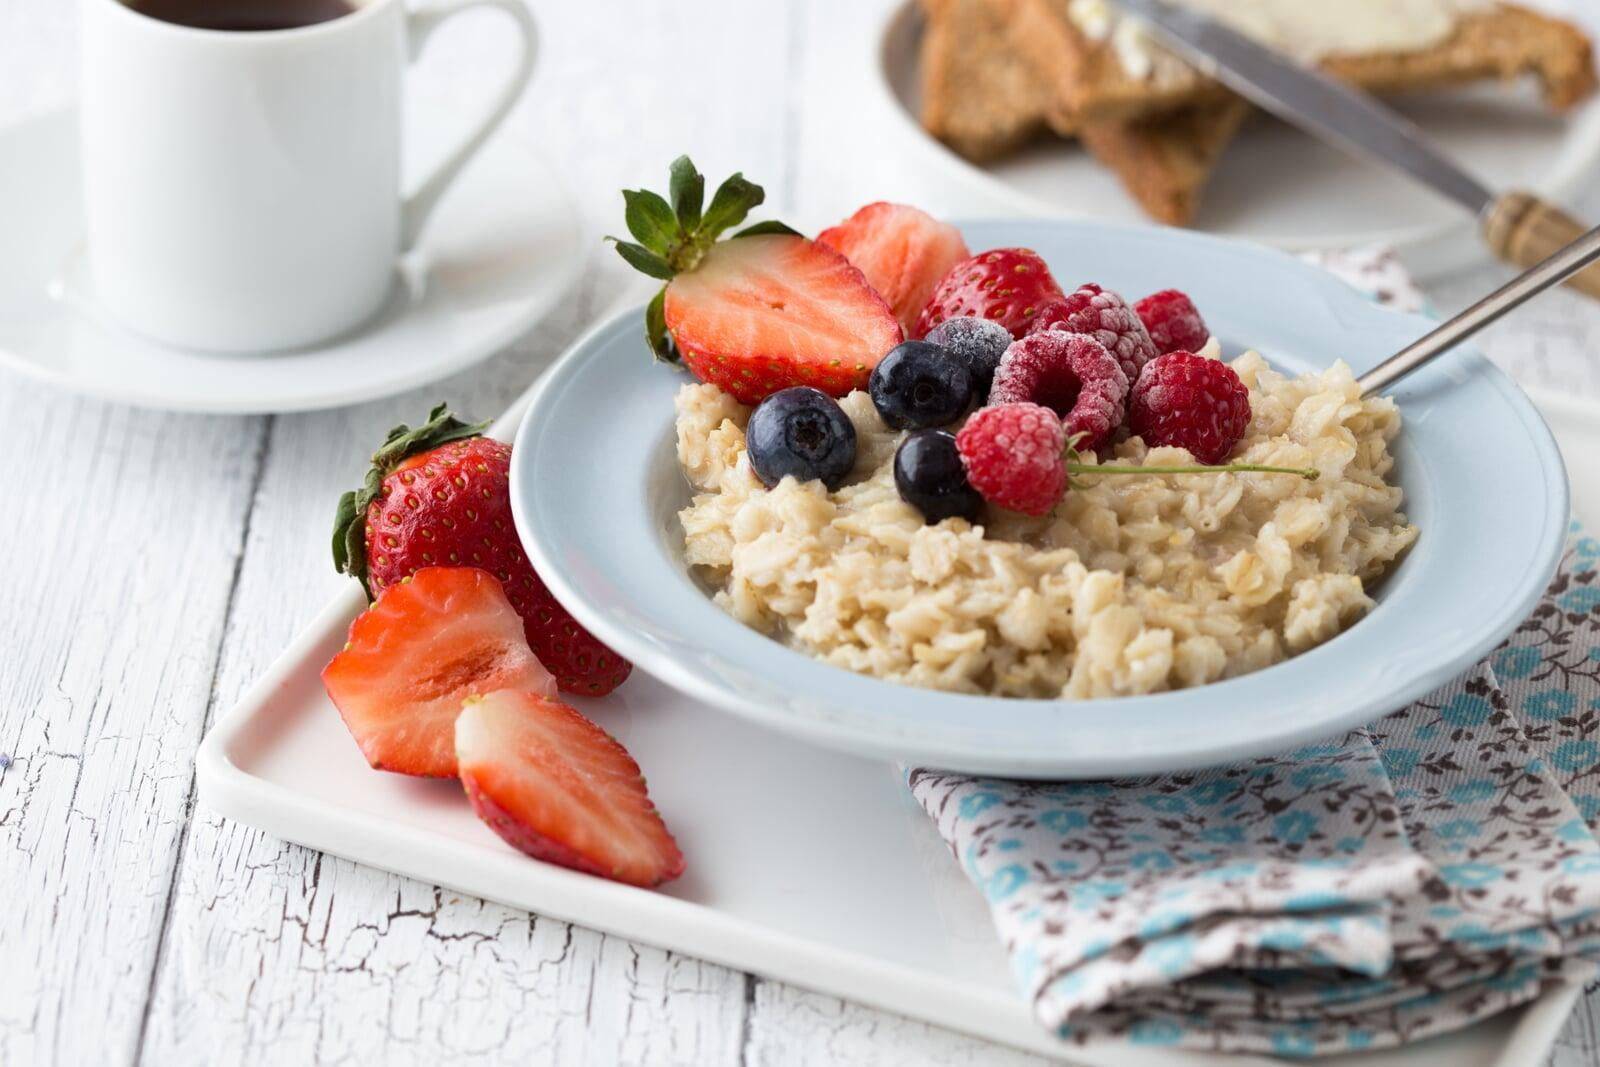  завтрак: каким он должен быть чтобы способствовать похудению?